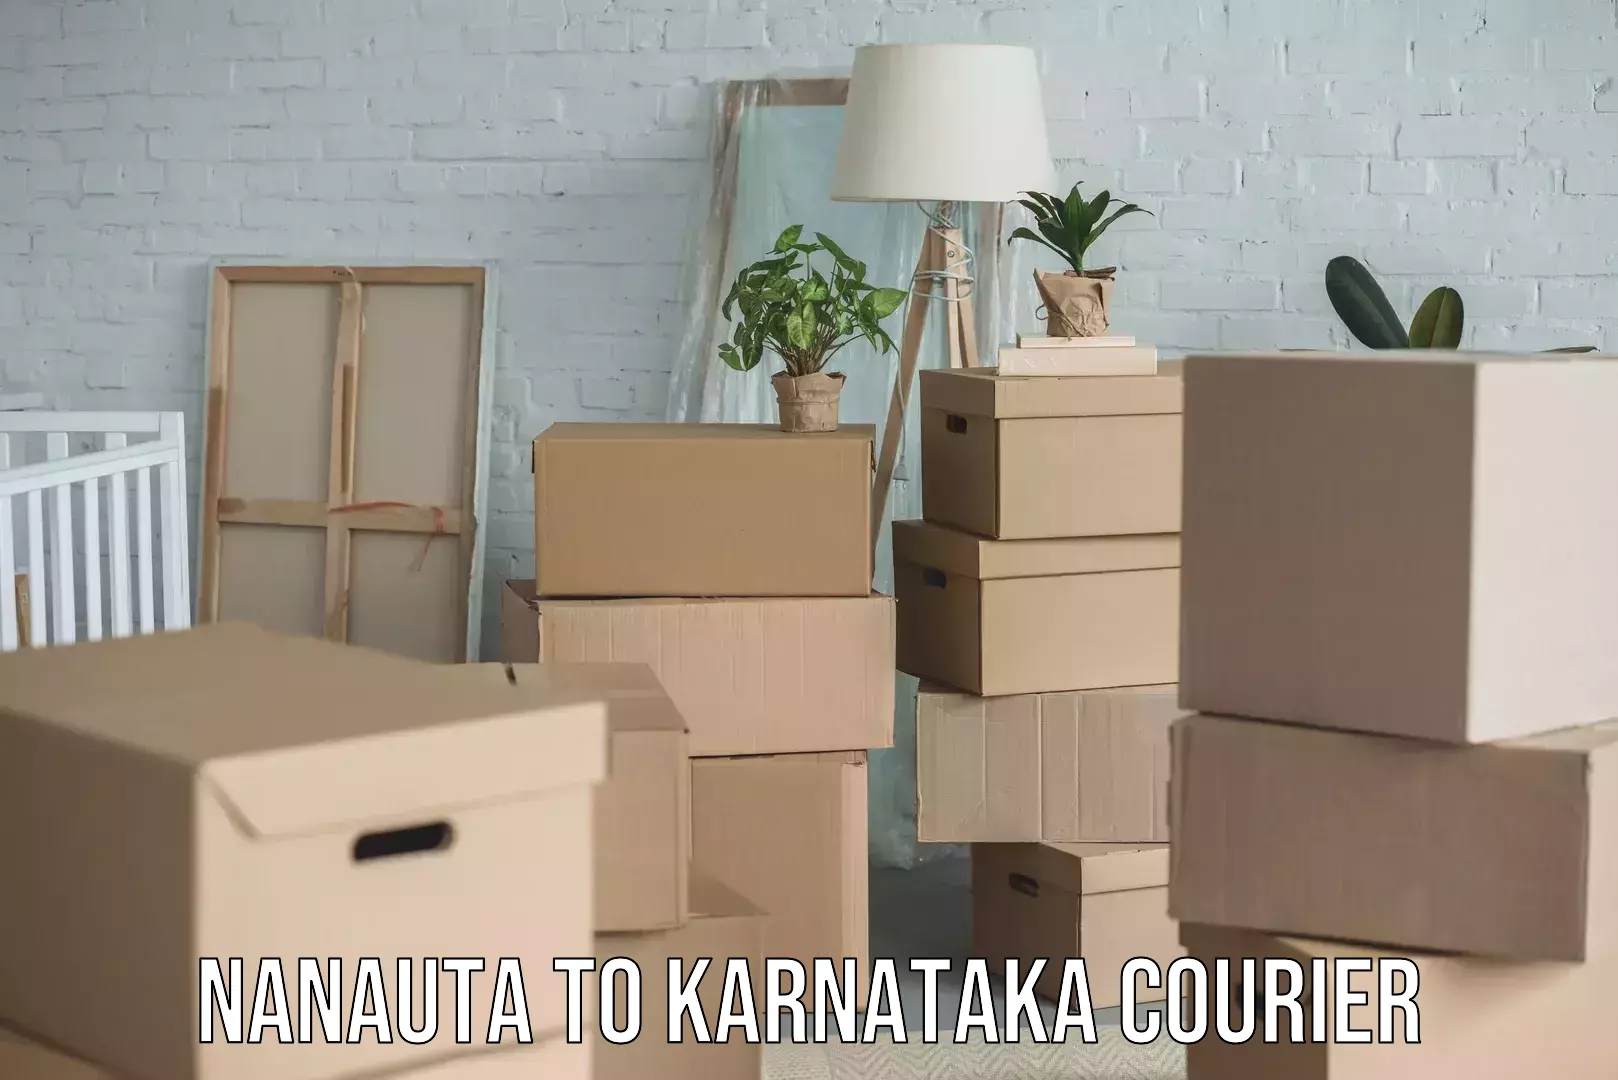 Local home movers Nanauta to Karnataka